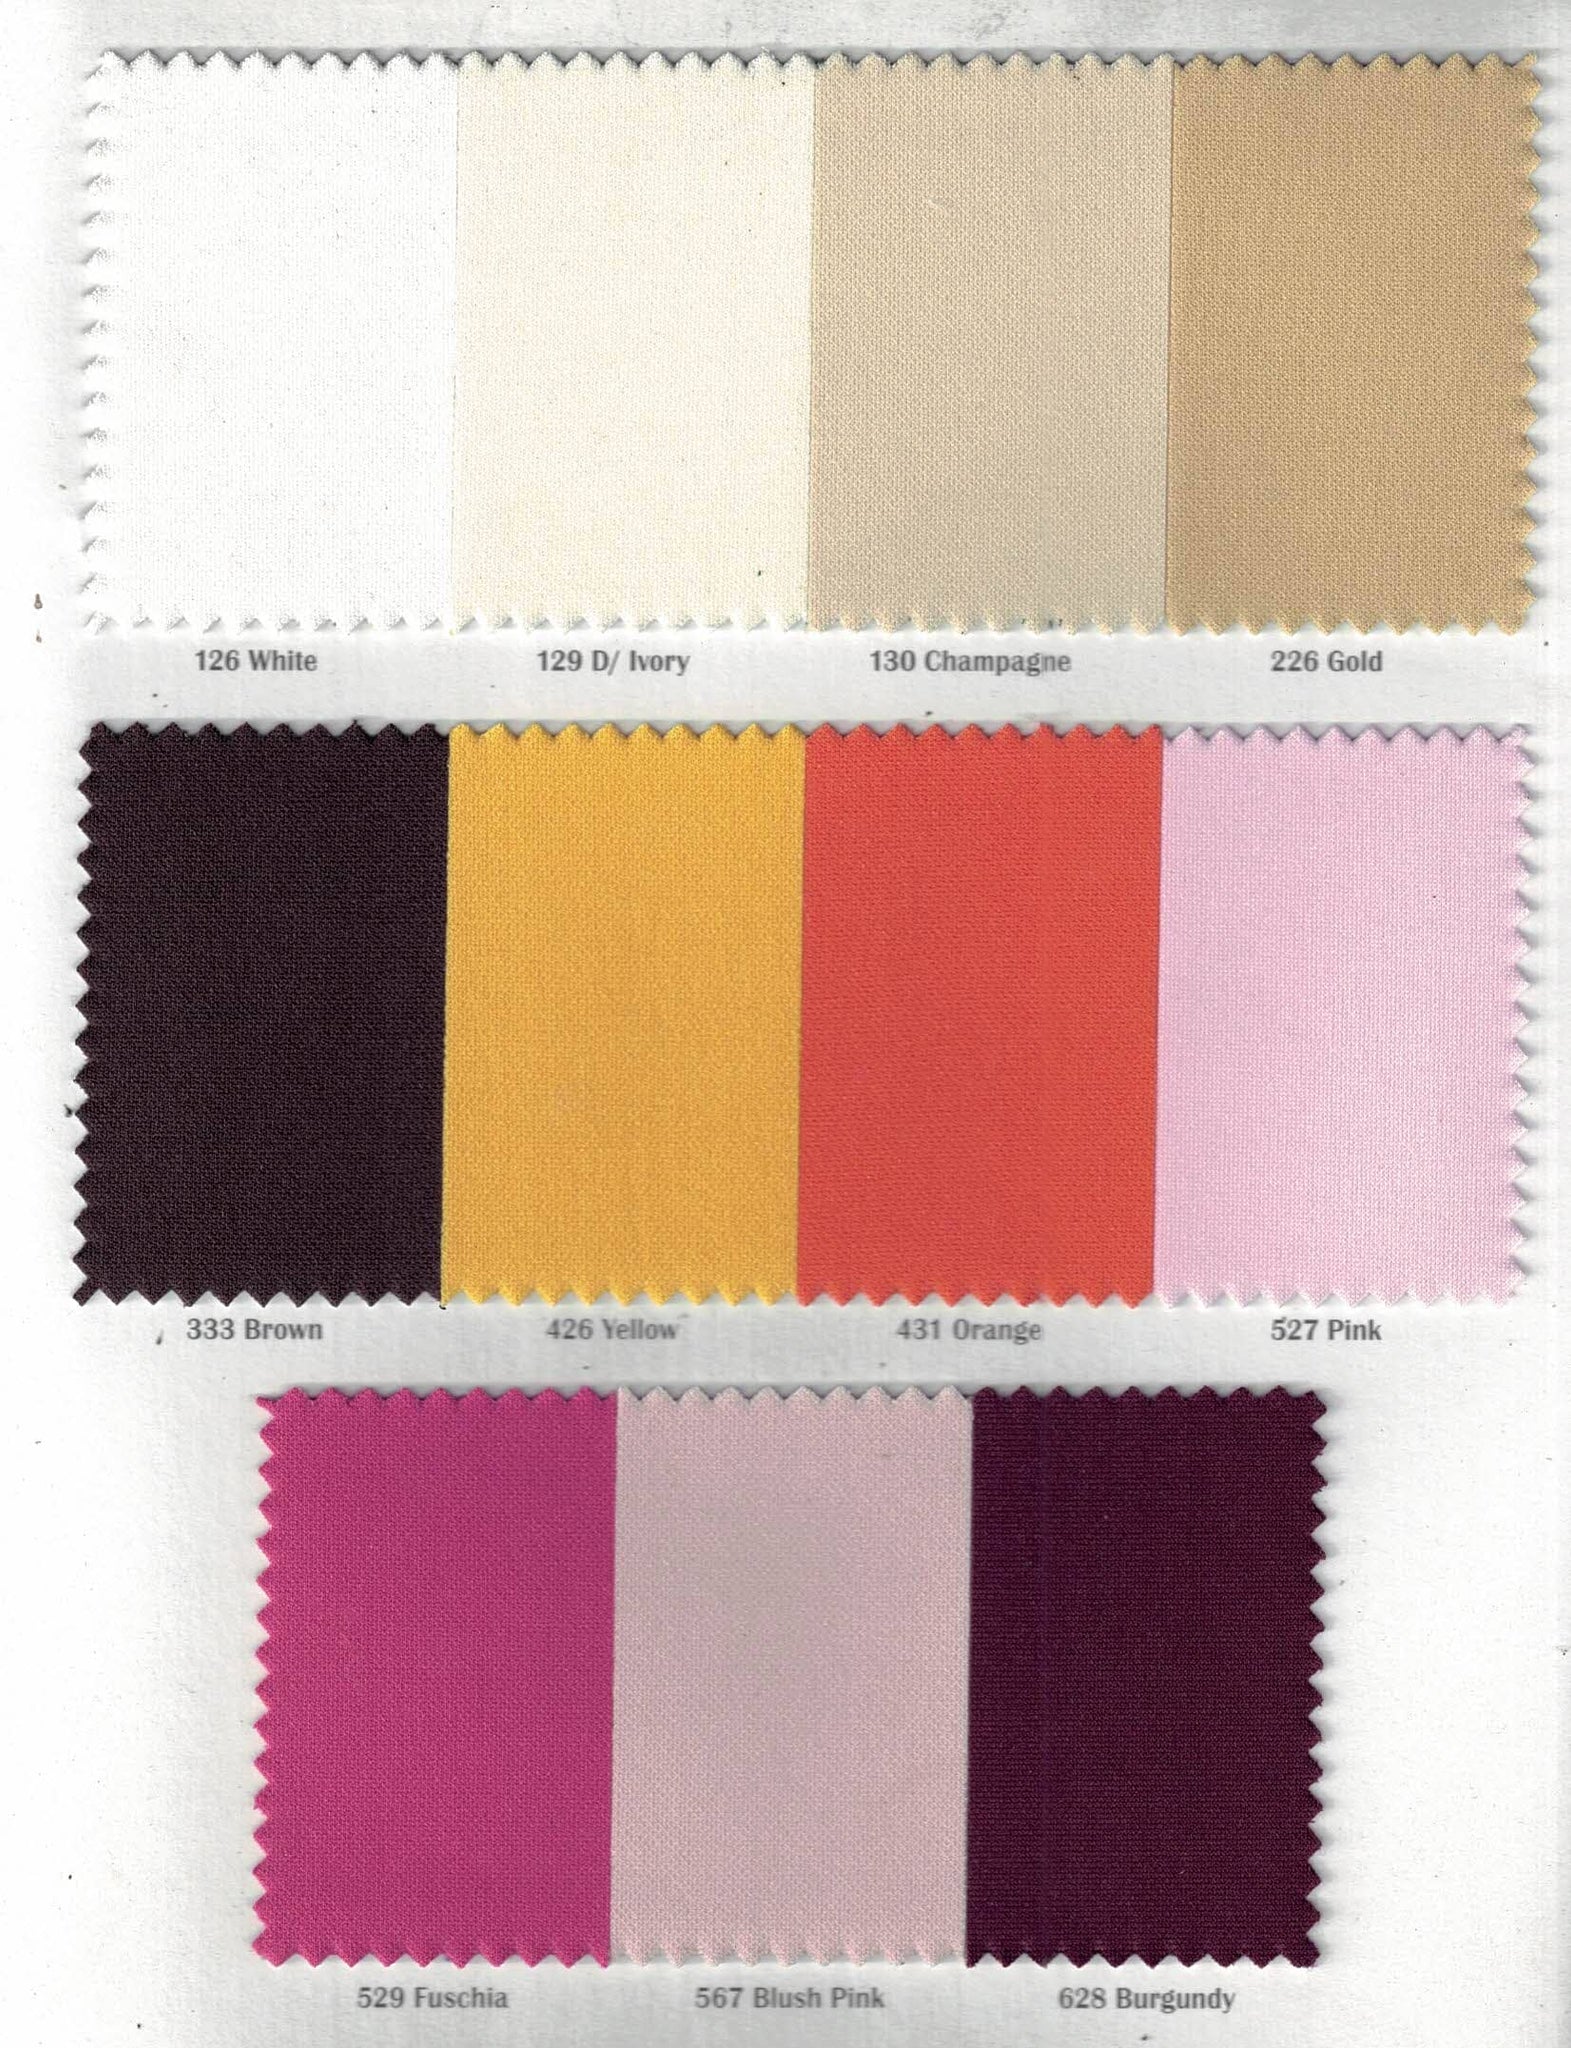 Scuba Knit - Poly/Lycra Blend - Colors - Gaffney Fabrics